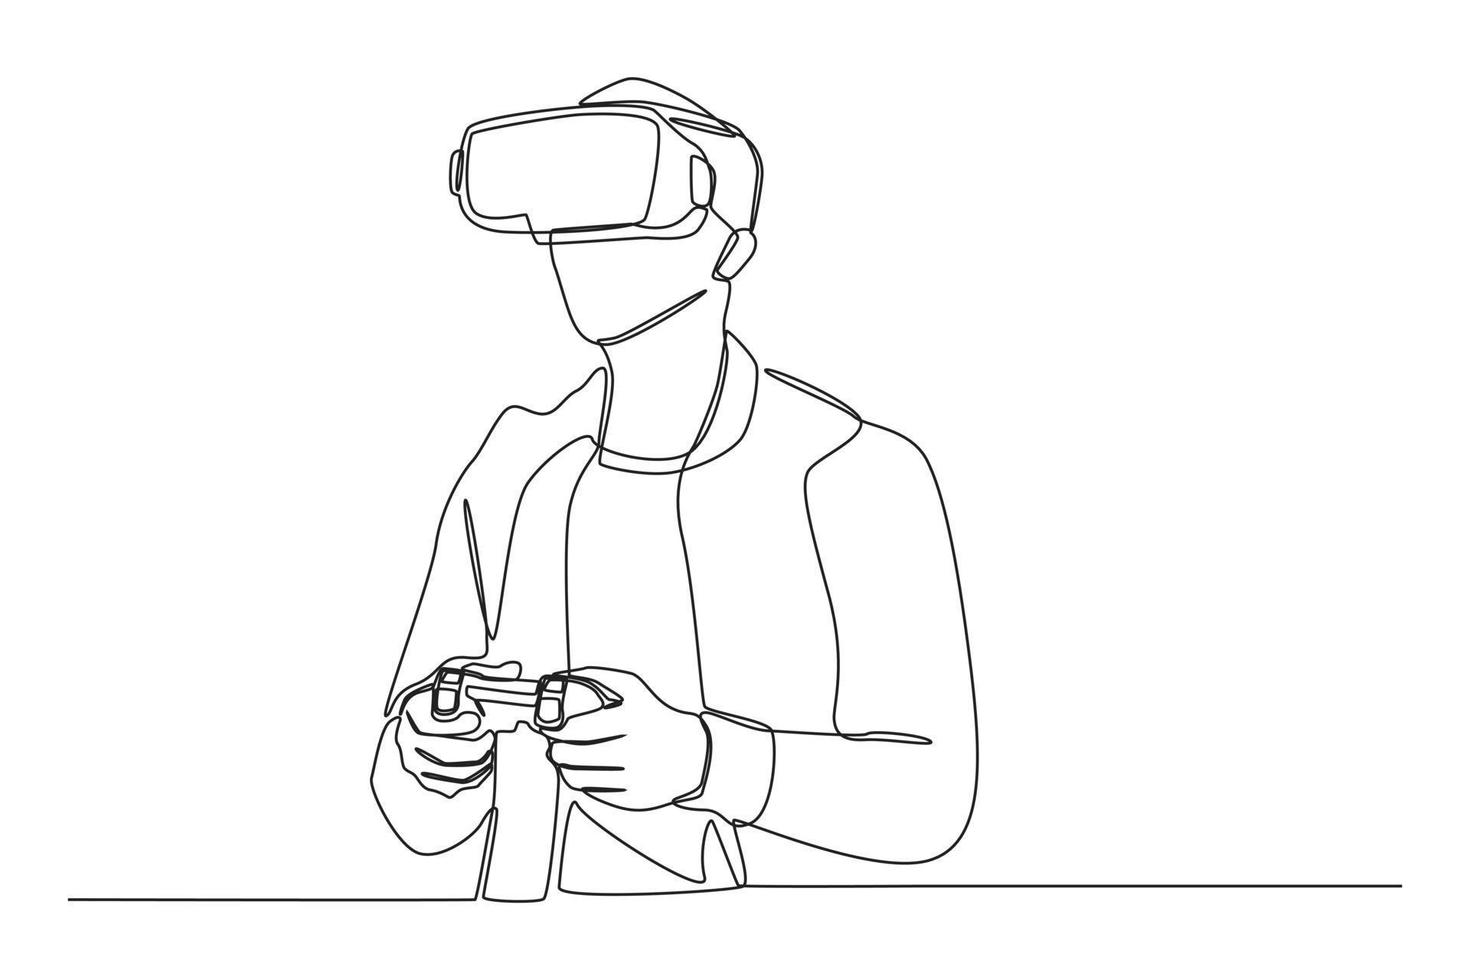 eine durchgehende strichzeichnung eines glücklichen jungen mannes, der in einem vr-headset-pc-gerät zuschaut und ein pc-spiel mit einer joystick-konsole spielt. virtuelles Spielkonzept. einzeiliges zeichnen design vektorgrafik illustration. vektor